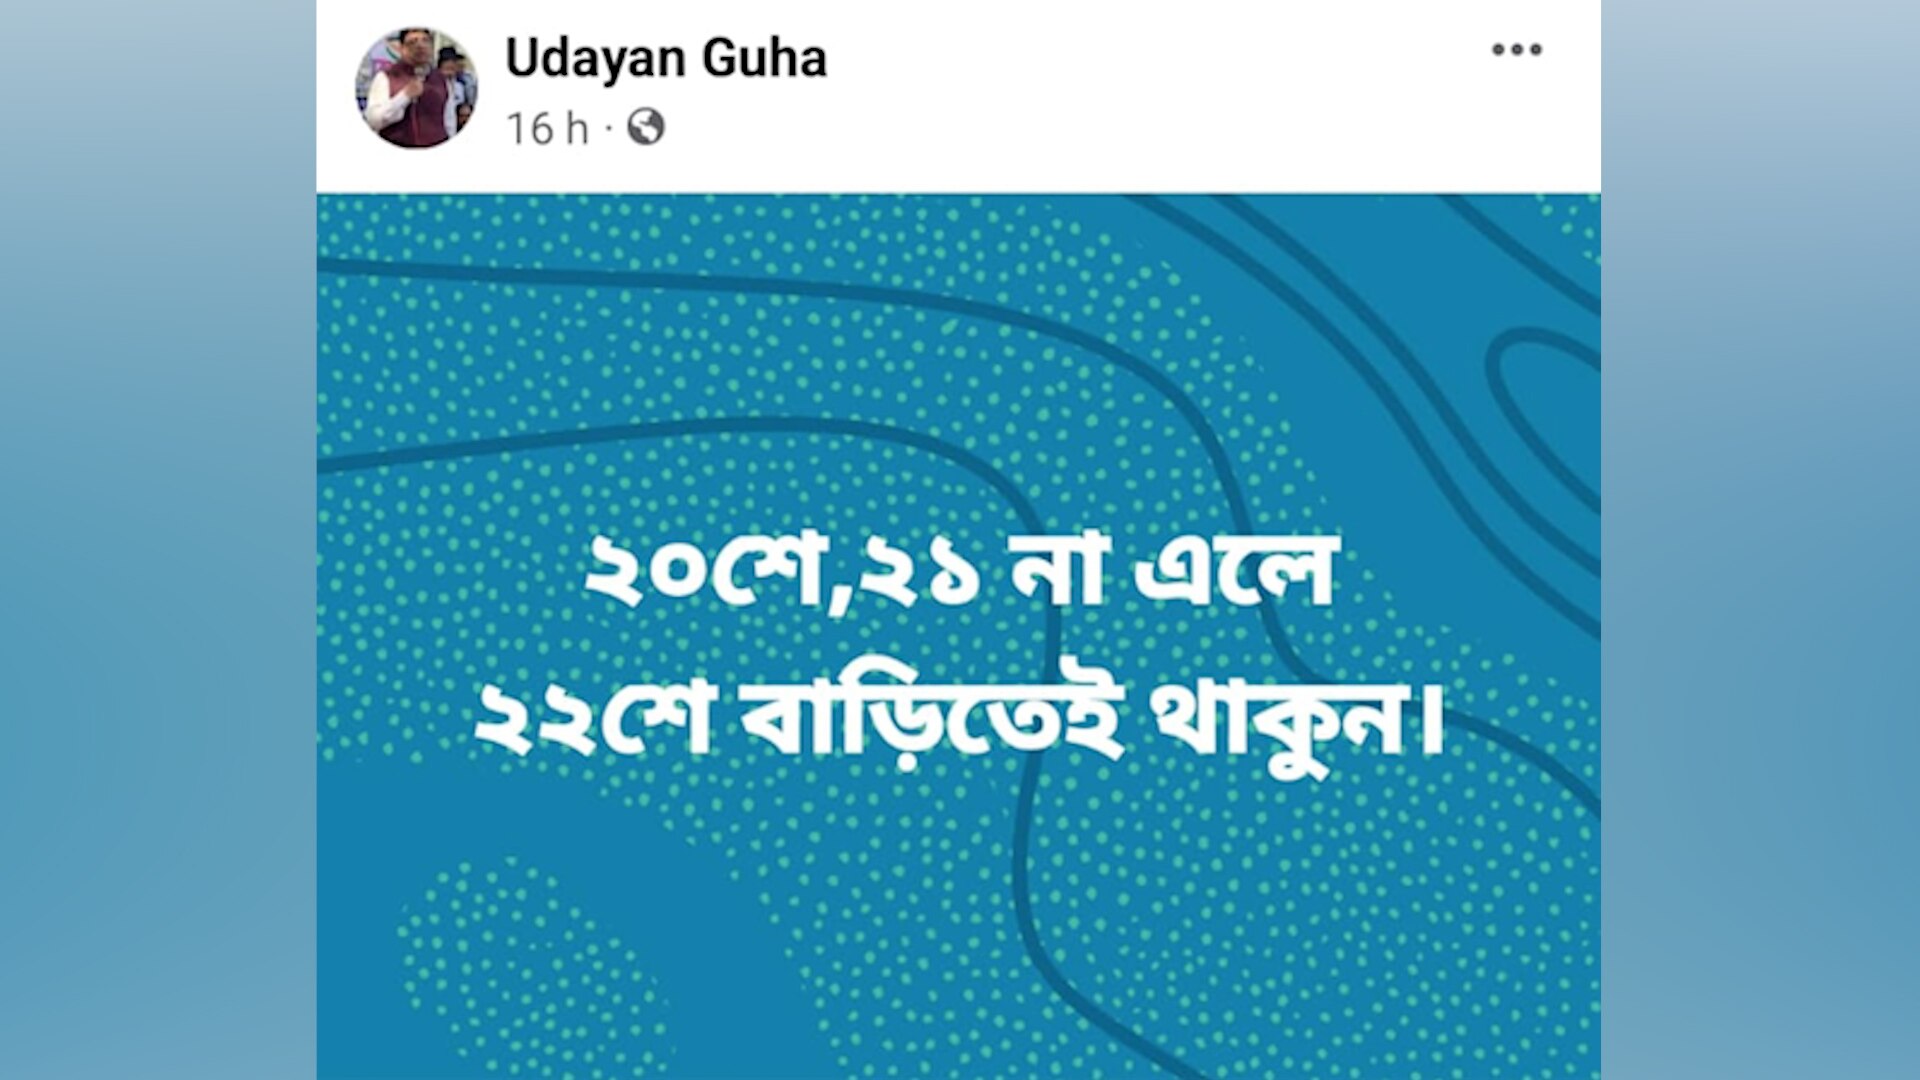 DA Agitation Udayan Guha : '২০ ও ২১ তারিখ না এলে ....' এবার DA আন্দোলনকারীদের বড়সড় হুমকি দিলেন উদয়ন গুহ